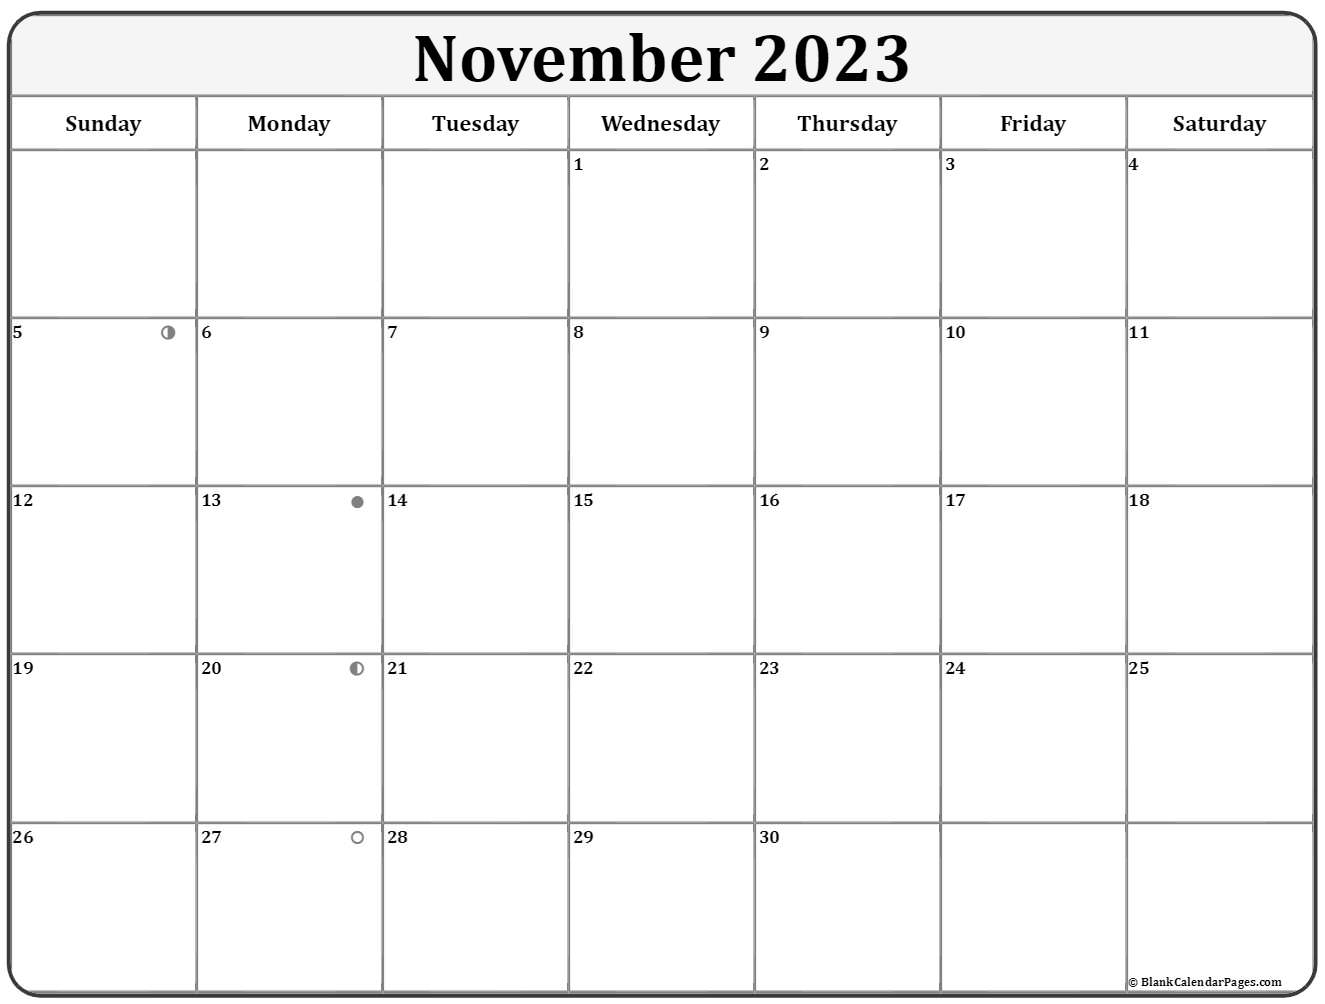 moon-calendar-november-2023-printable-calendar-2023